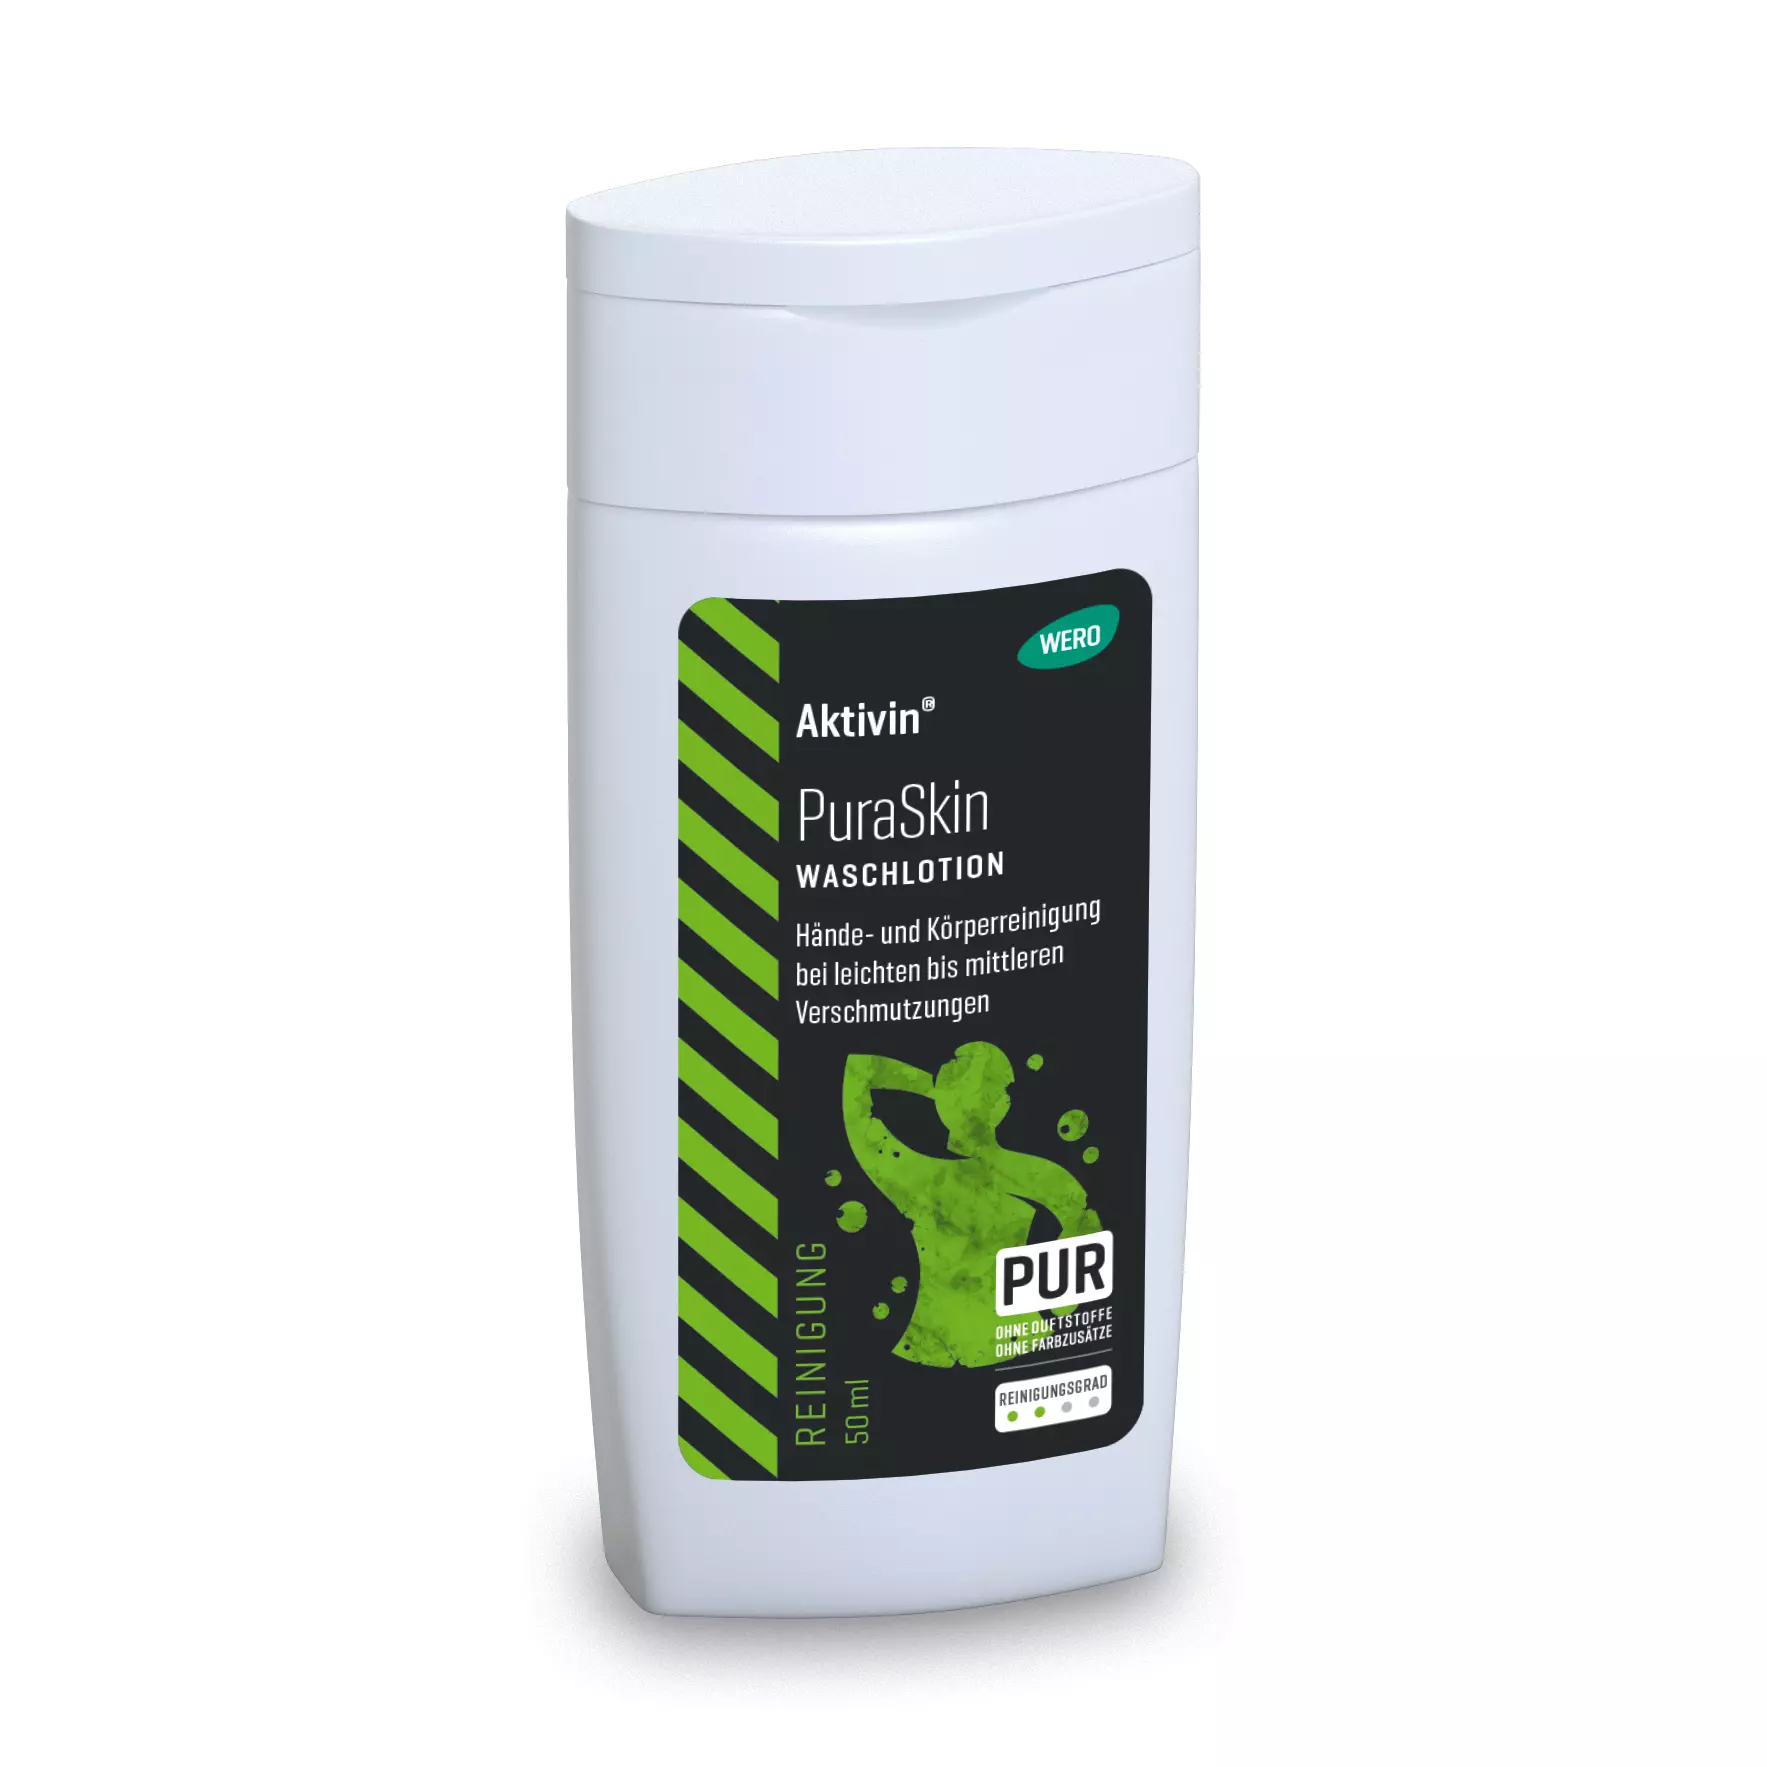 Waschlotion Aktivin® PuraSkin - Probiergröße, 50 ml